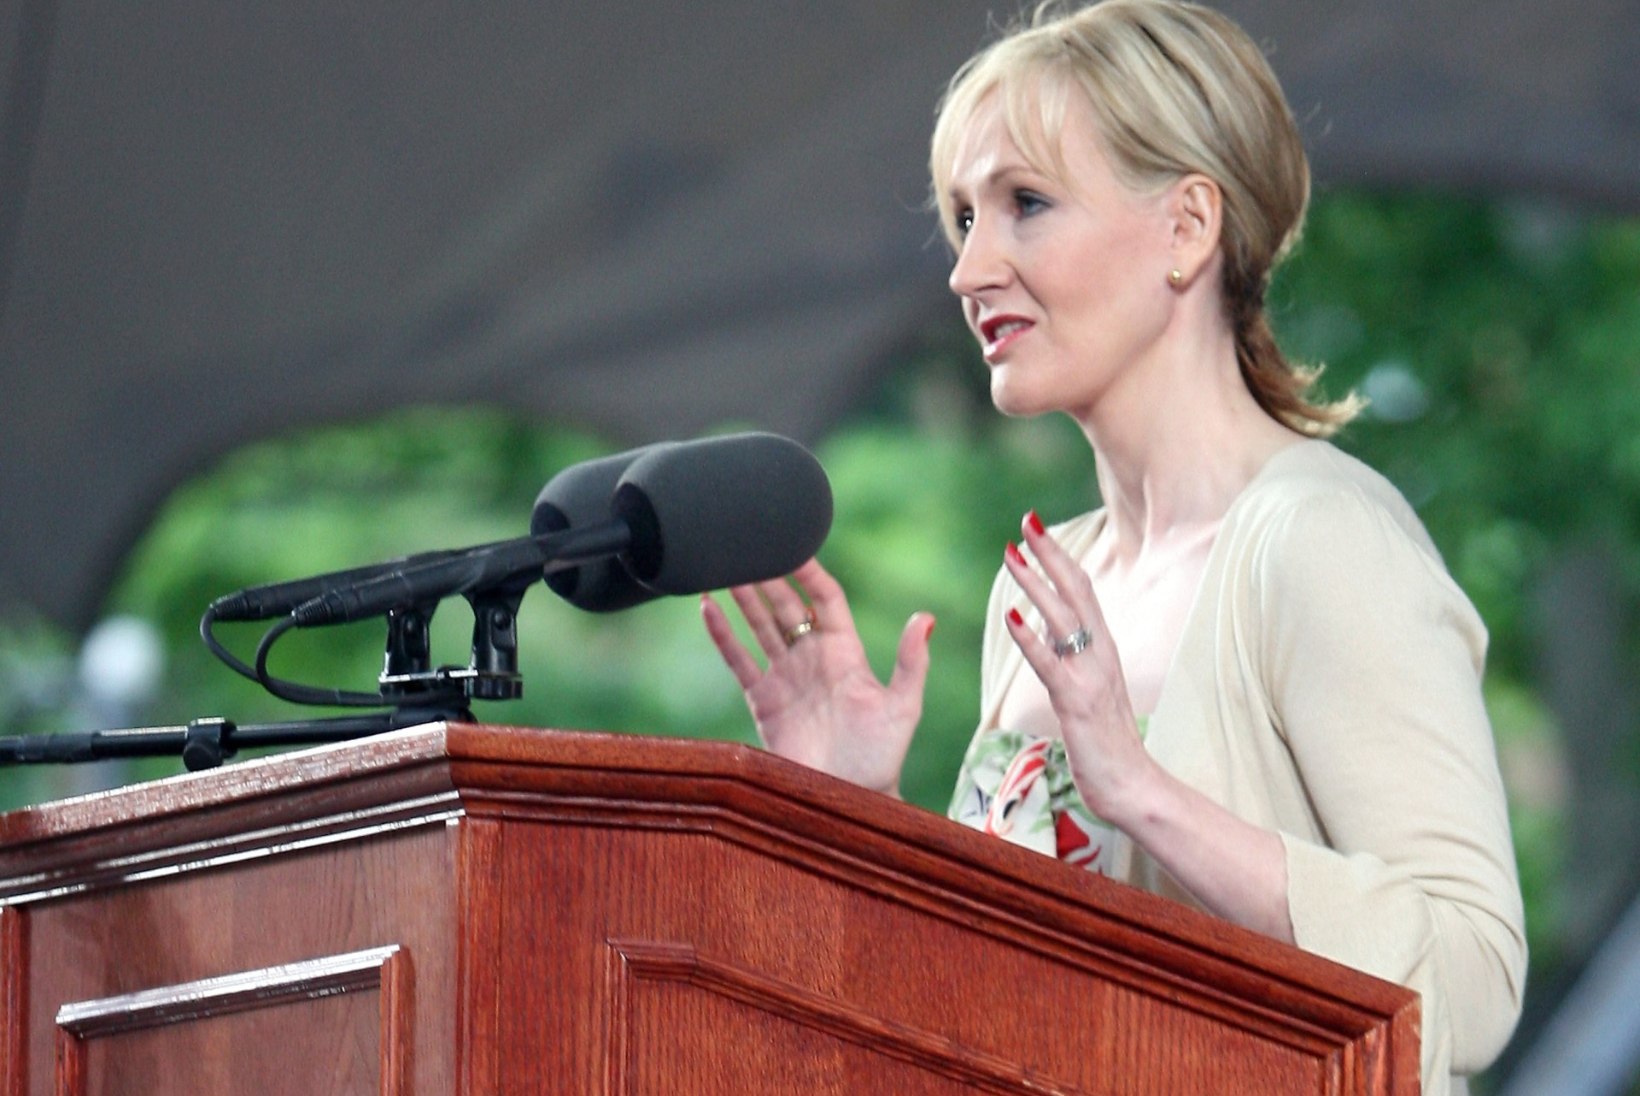 Rowlingi elutarkused: ära karda prohmakaid ja lase fantaasia lendu